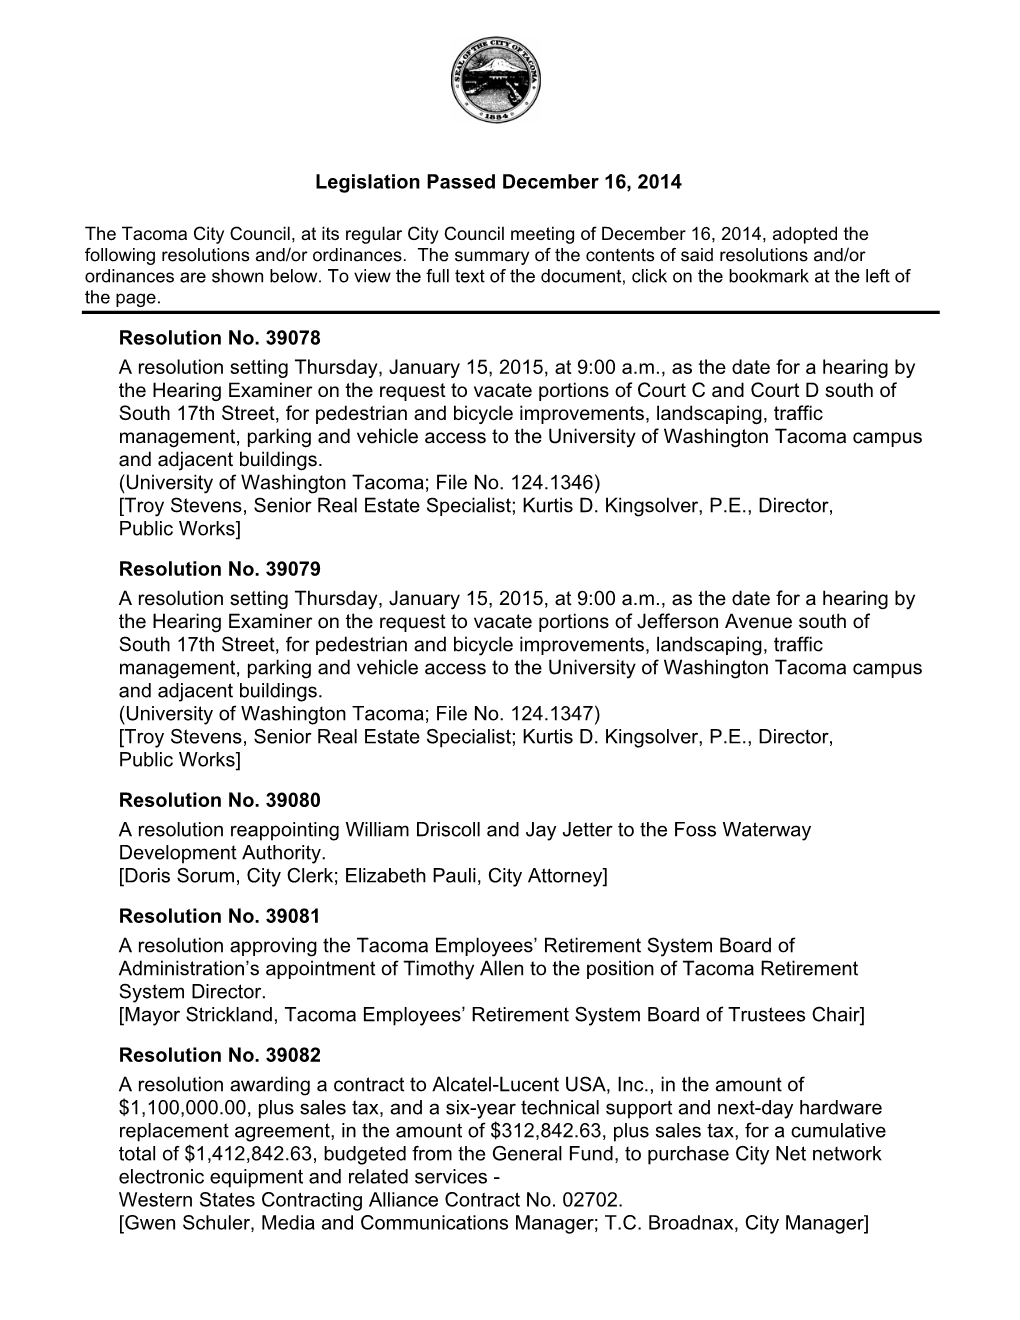 Legislation Passed December 16, 2014 Resolution No. 39078 A